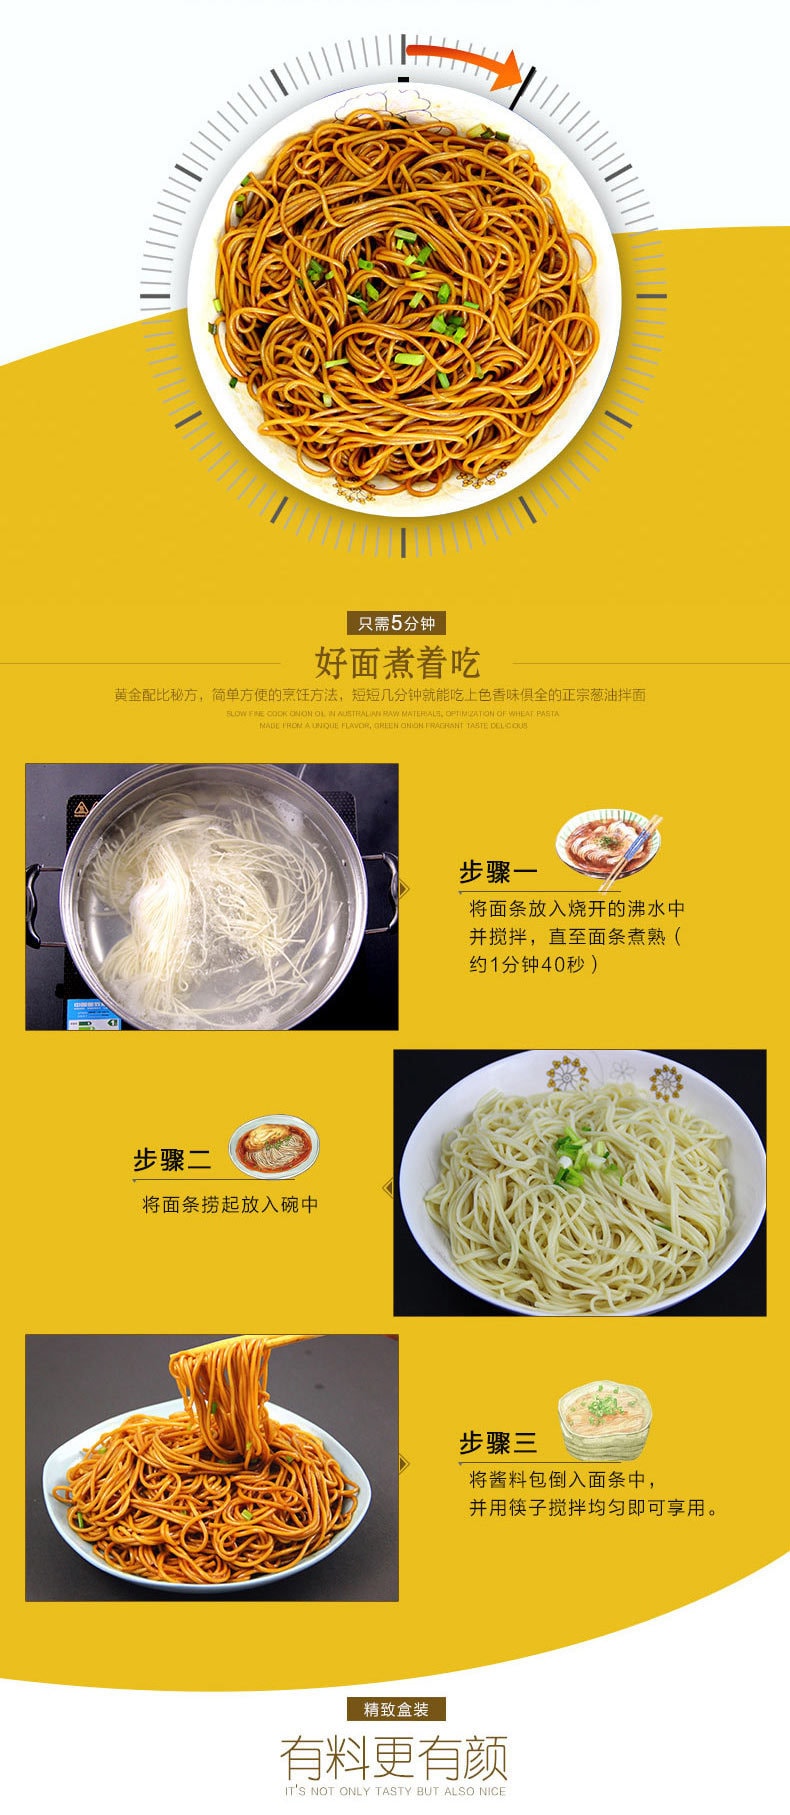 【中国直邮】上海小南国 煮好面--葱油拌面 330g